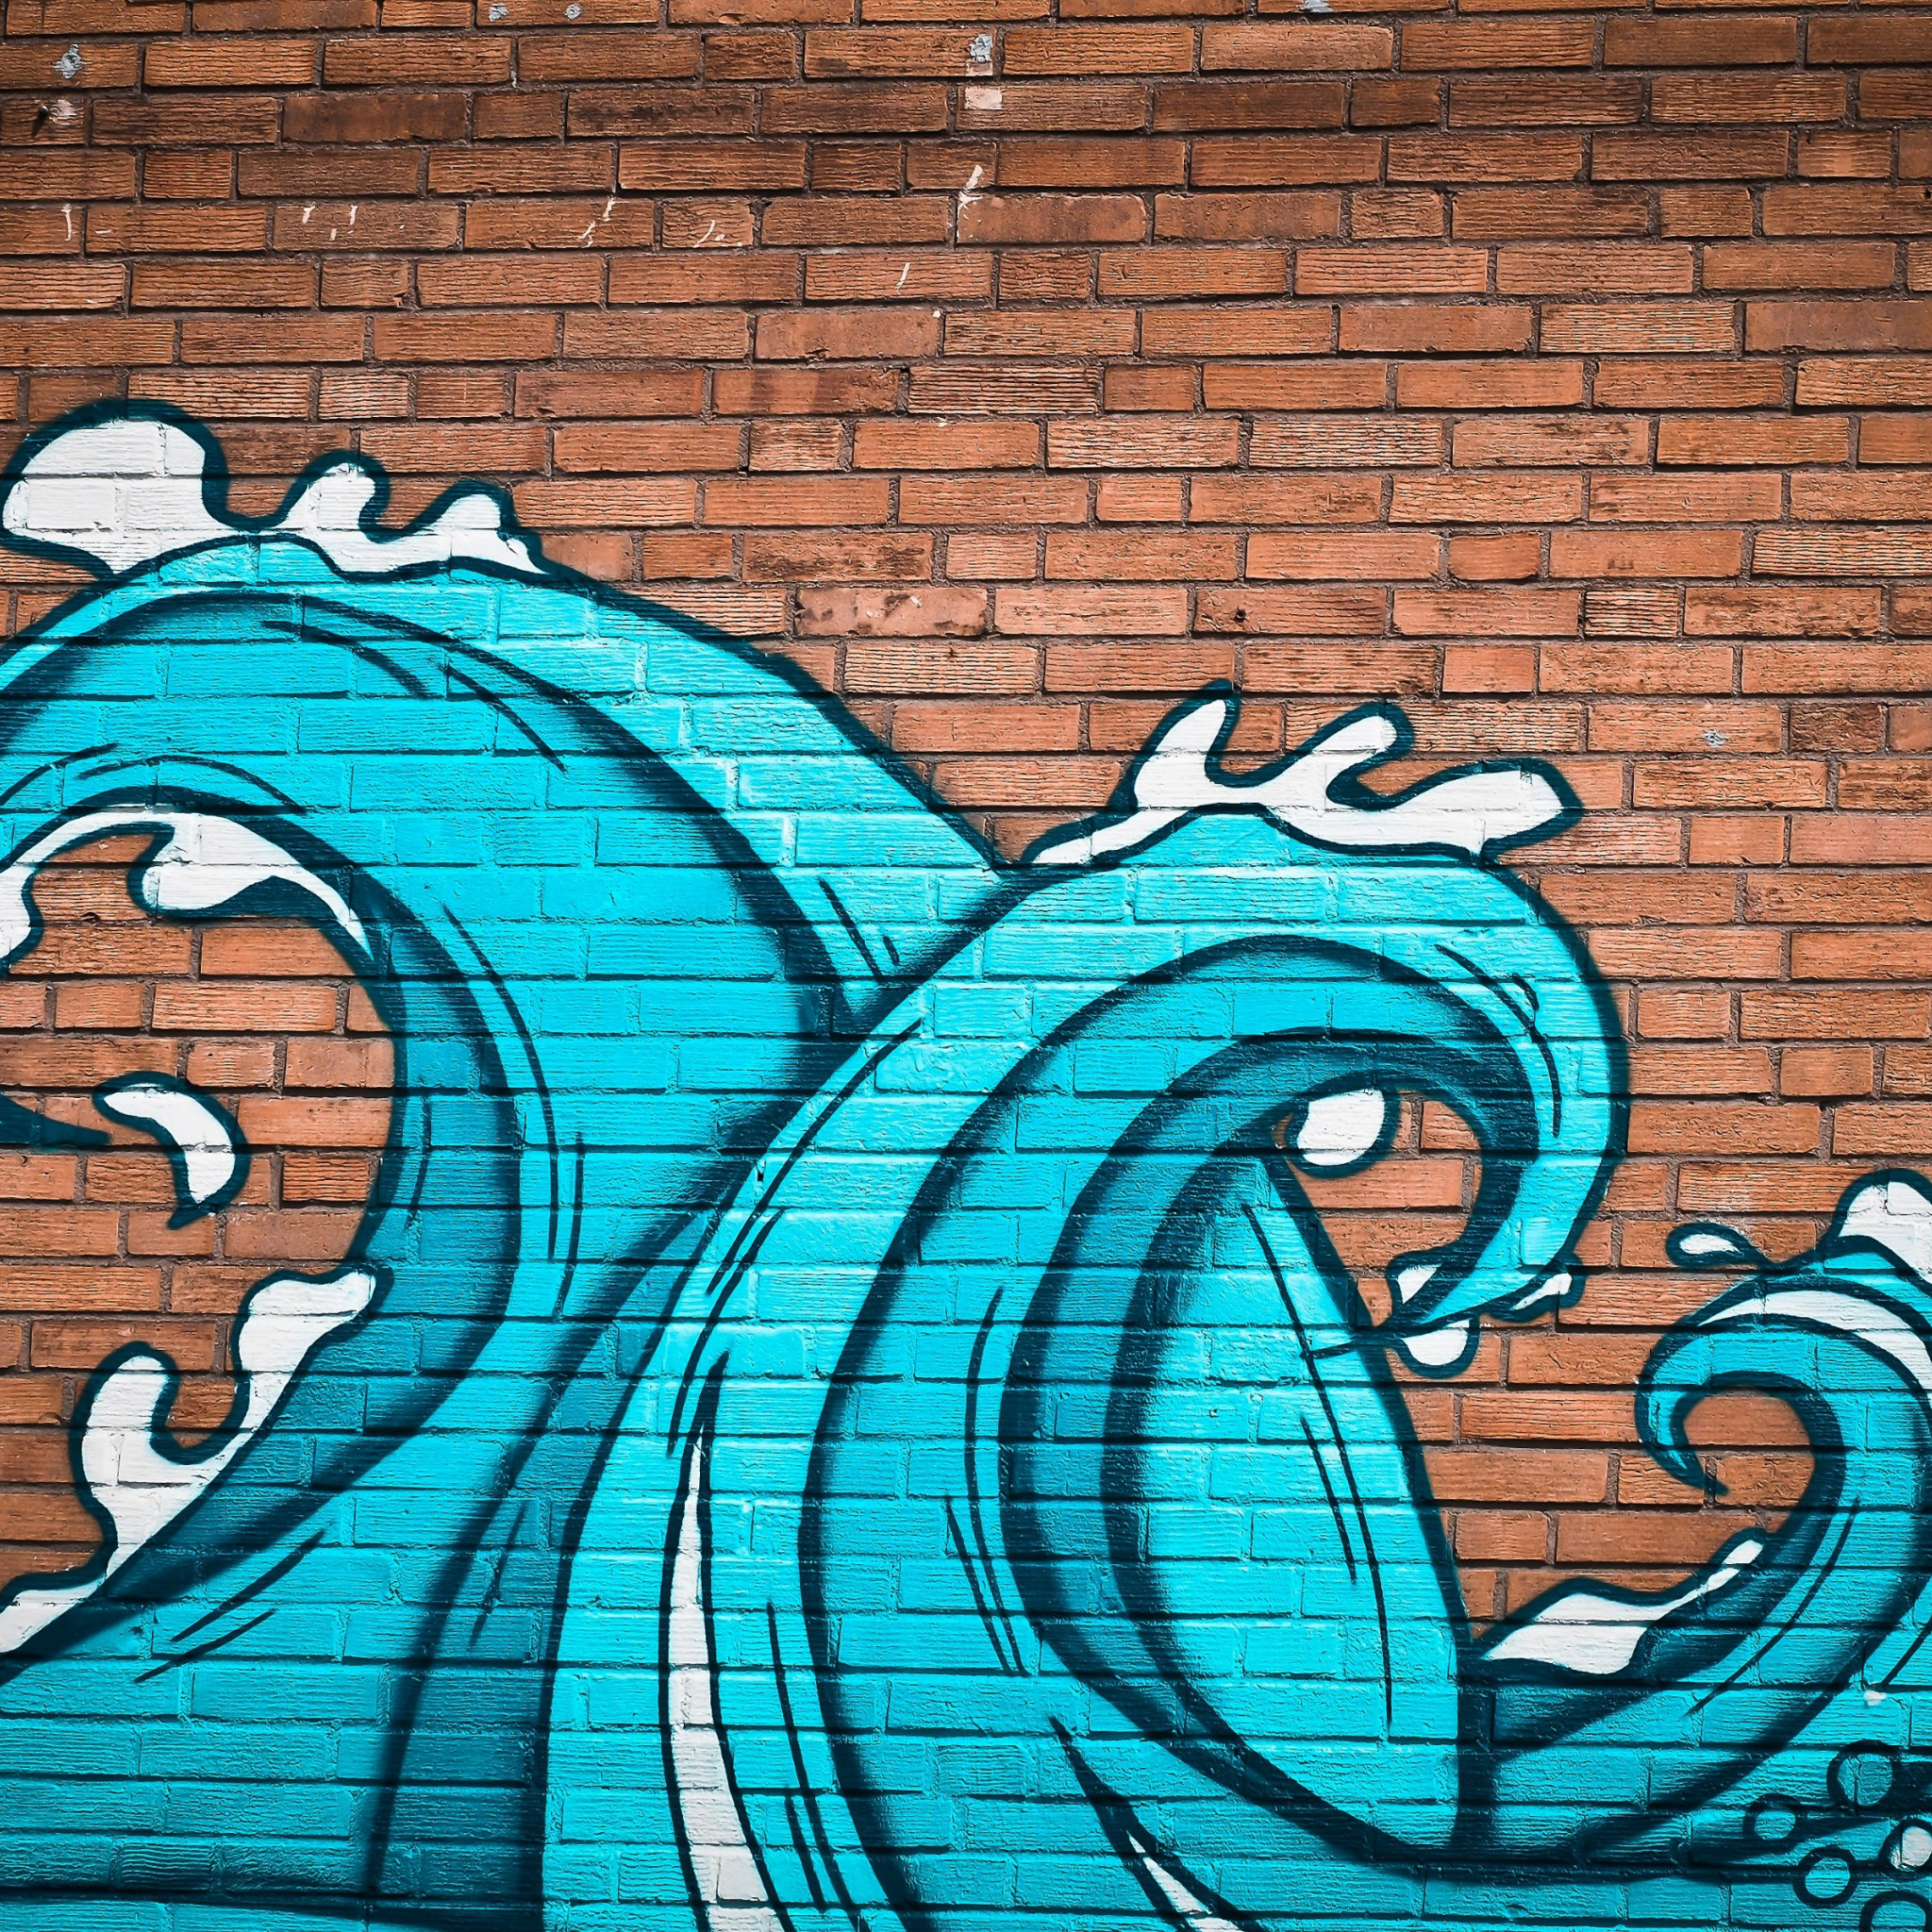 Graffiti waves on brick wall wallpaper 2048x2048